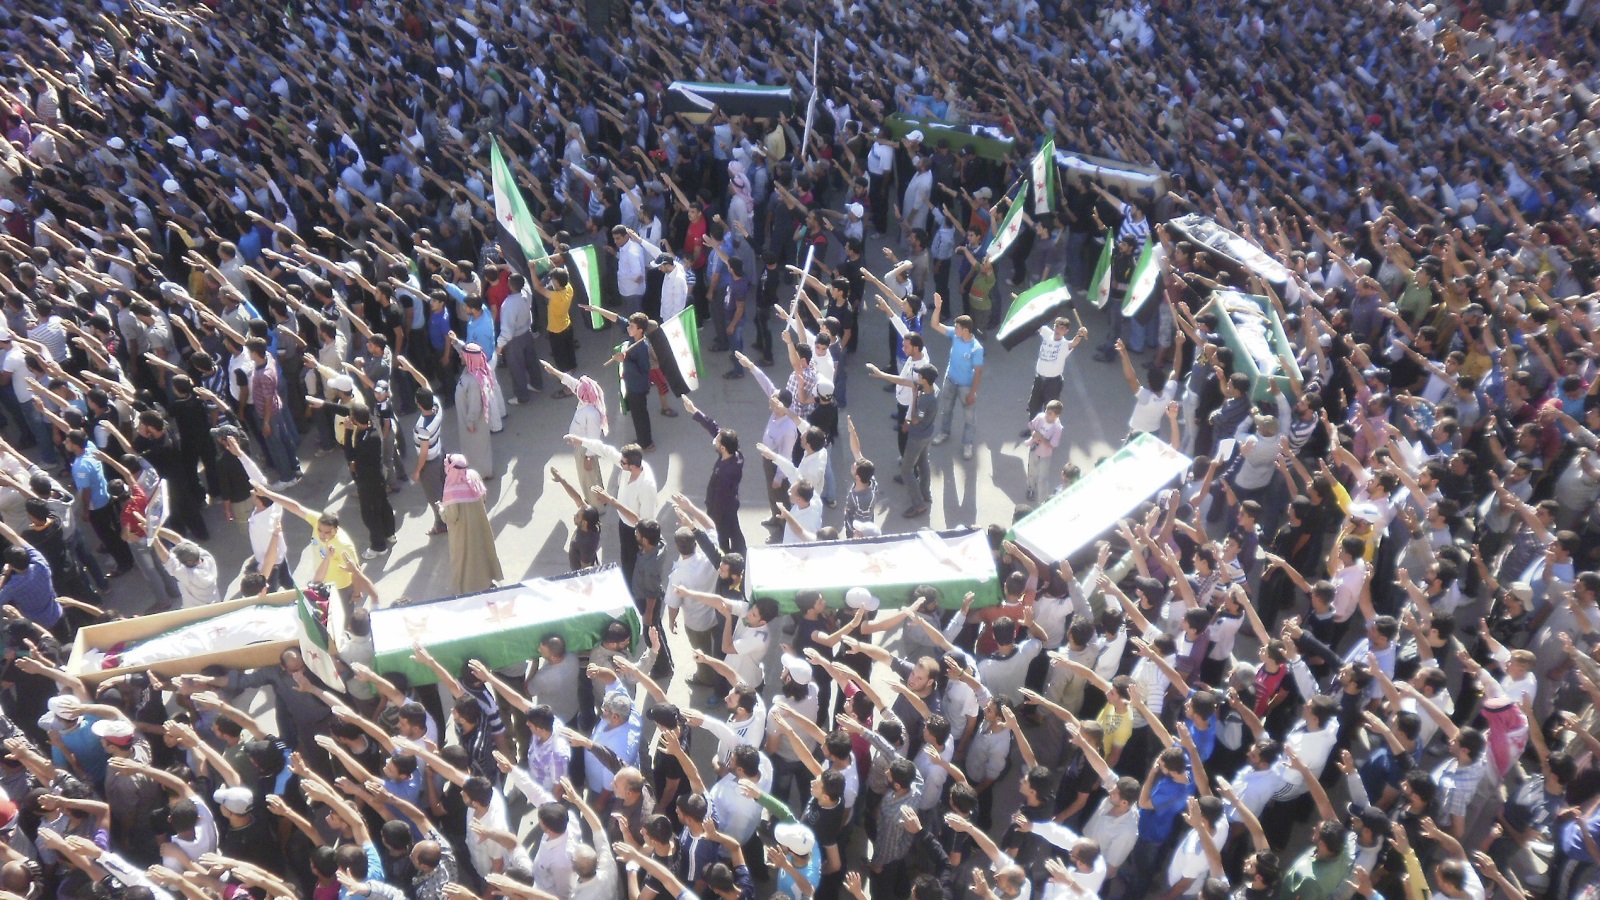 خرجت أول مظاهرة في دمشق في ١٥ مارس (آذار)، ثم انفجرت بكليتها في ١٨ مارس (آذار) بـ 